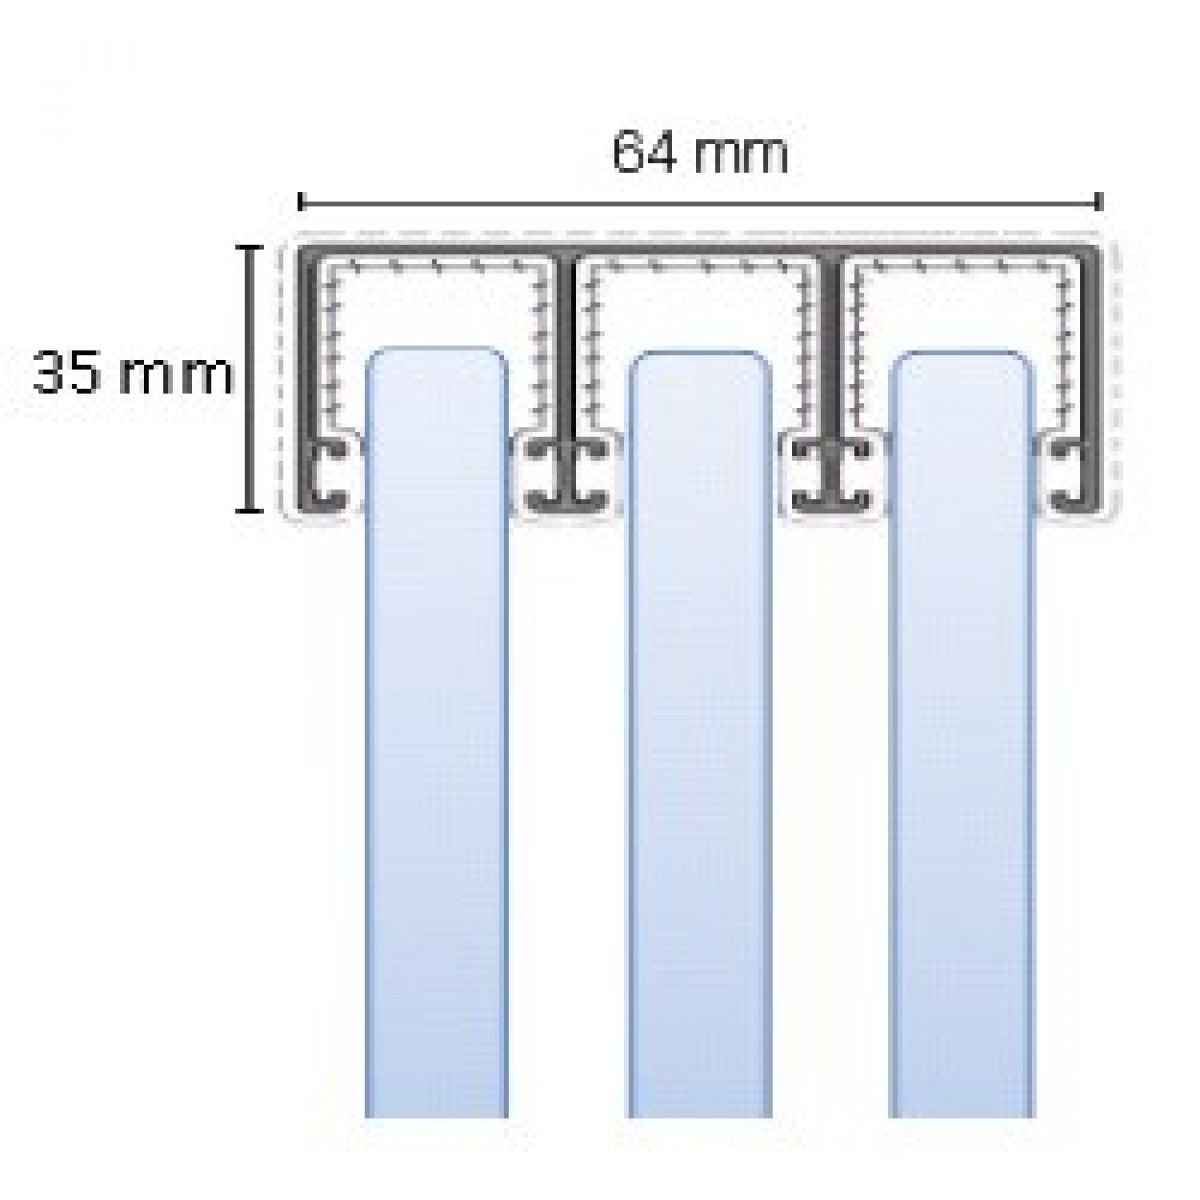 Glasschuifwand Profiline 3 spoor breedte 300 cm - antraciet - SALE01813